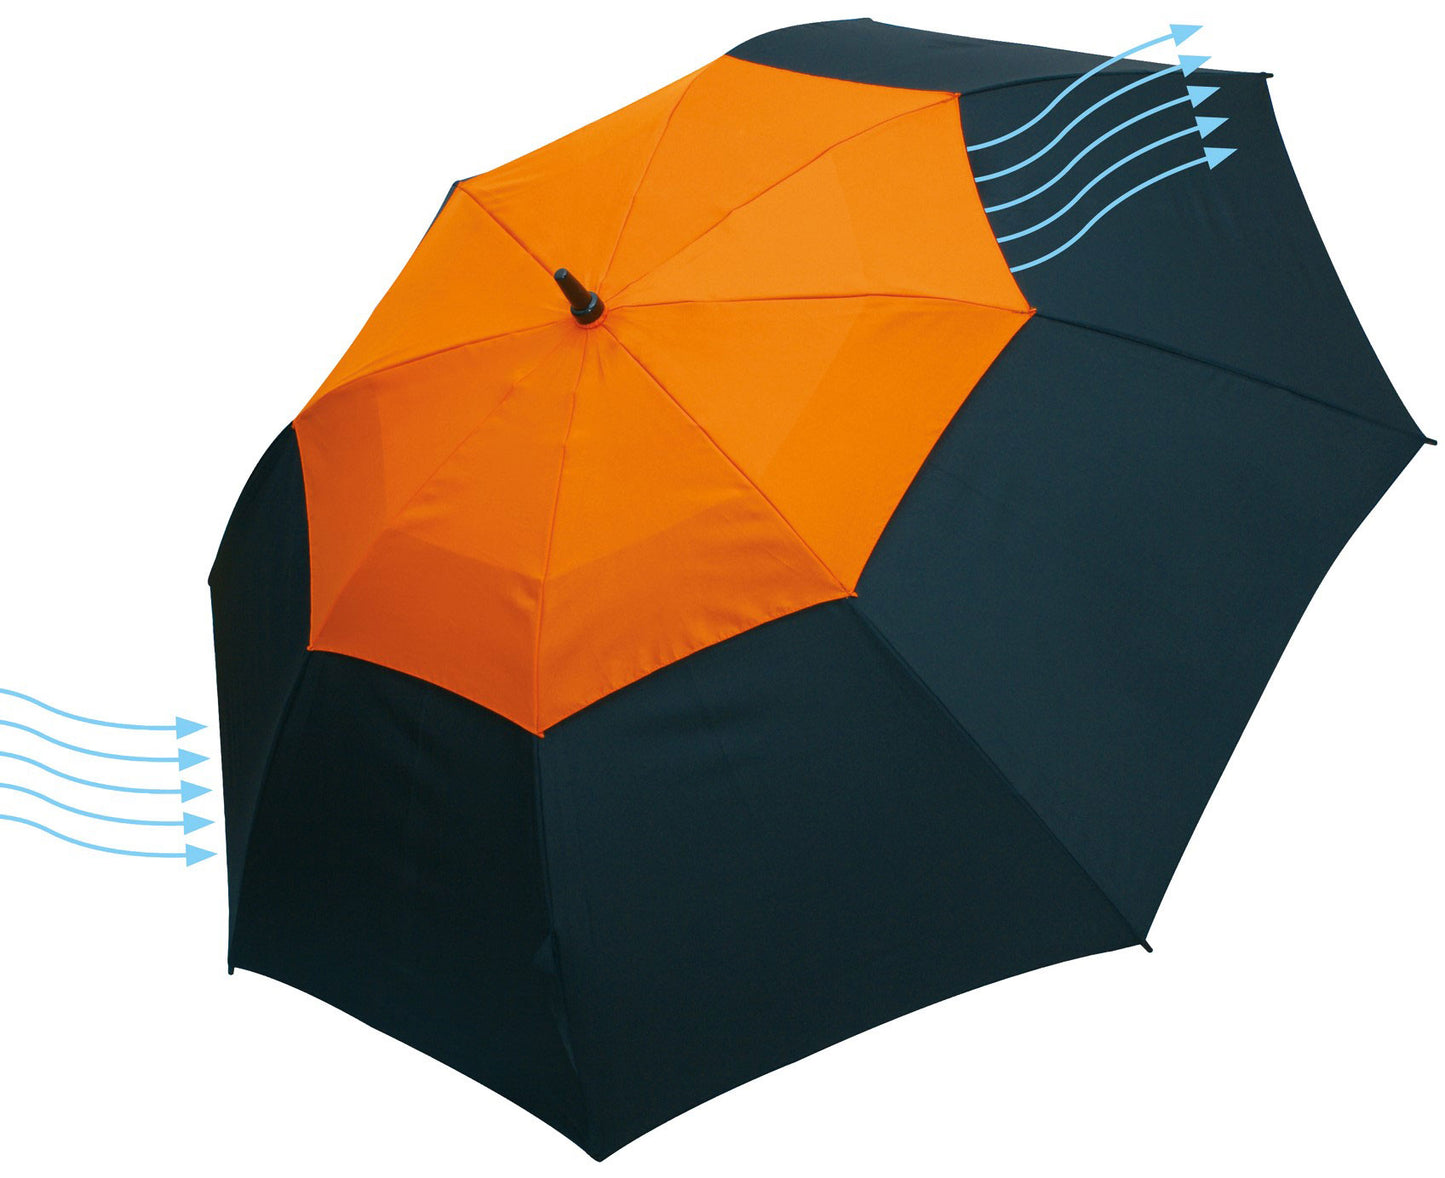 Μαύρη/πορτοκαλί ομπρέλα βροχής, συνοδείας, με αεραγωγό, ιστός και ακτίνες από αθρακόνημα.